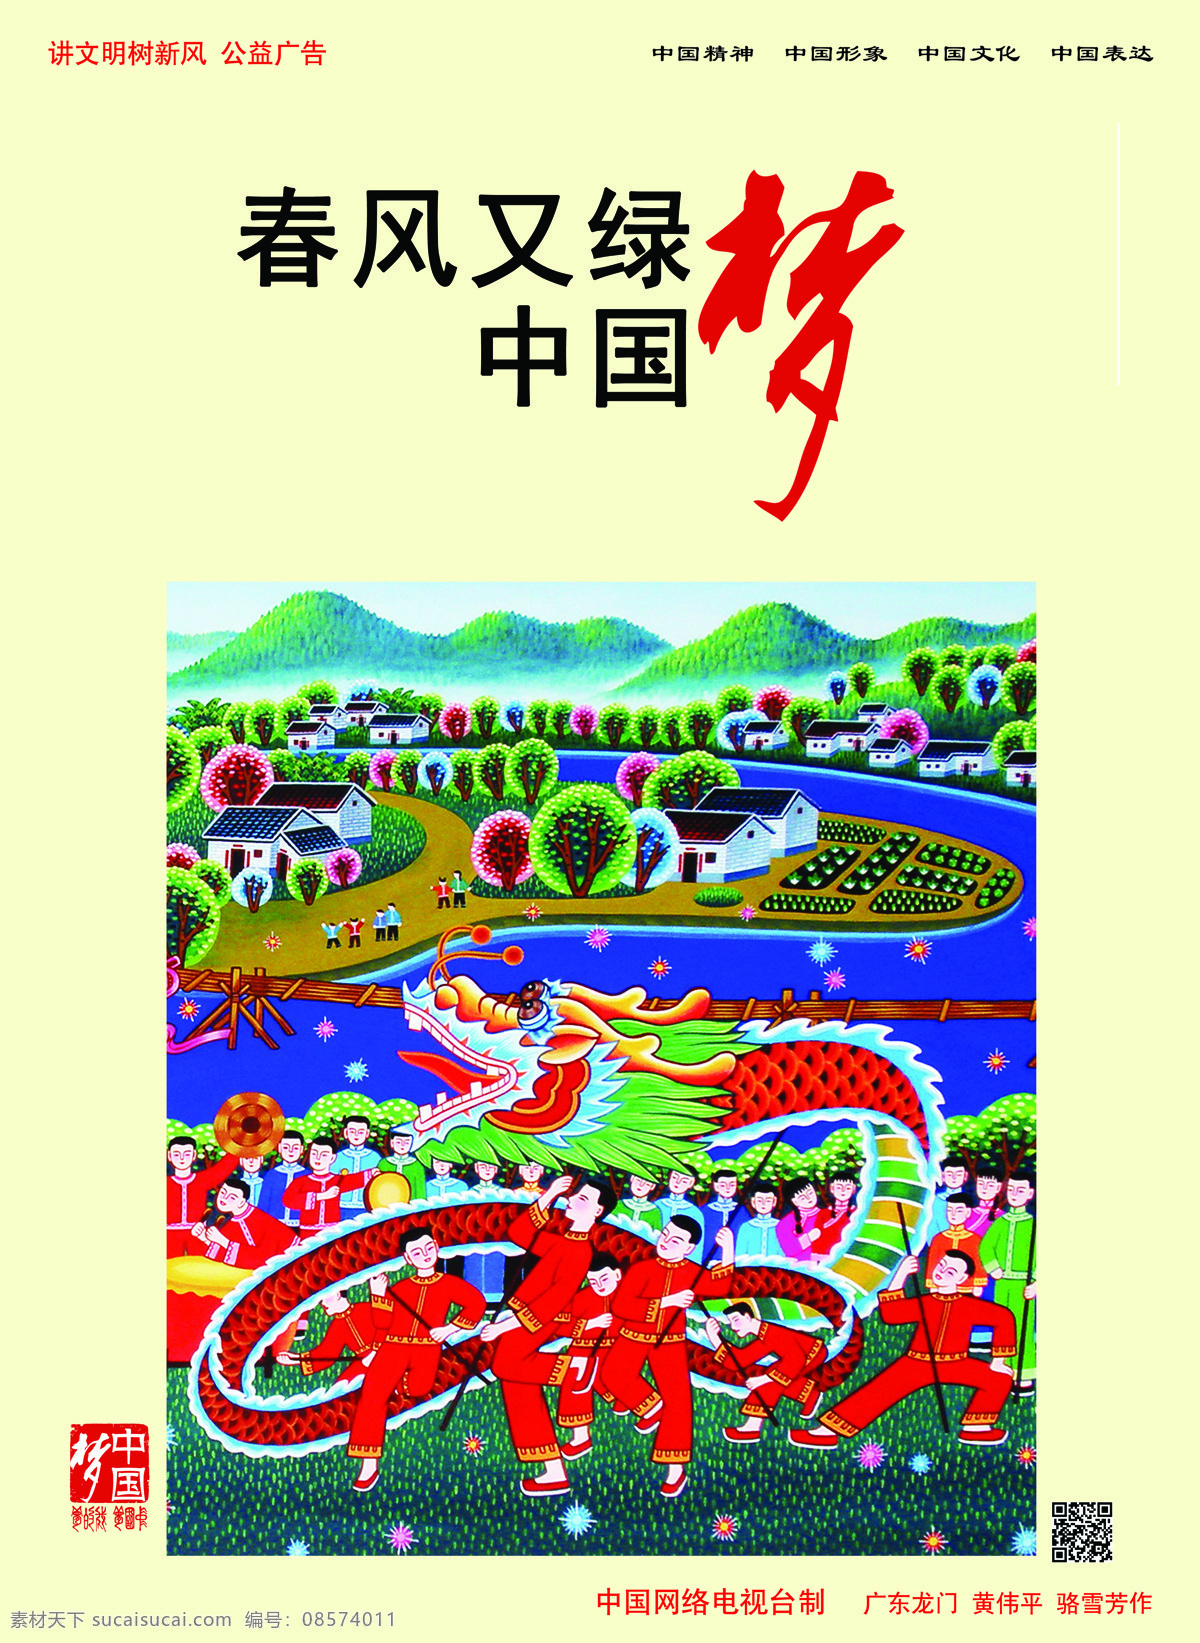 春风 绿 中国 梦 公益广告 中国梦系列 文化艺术